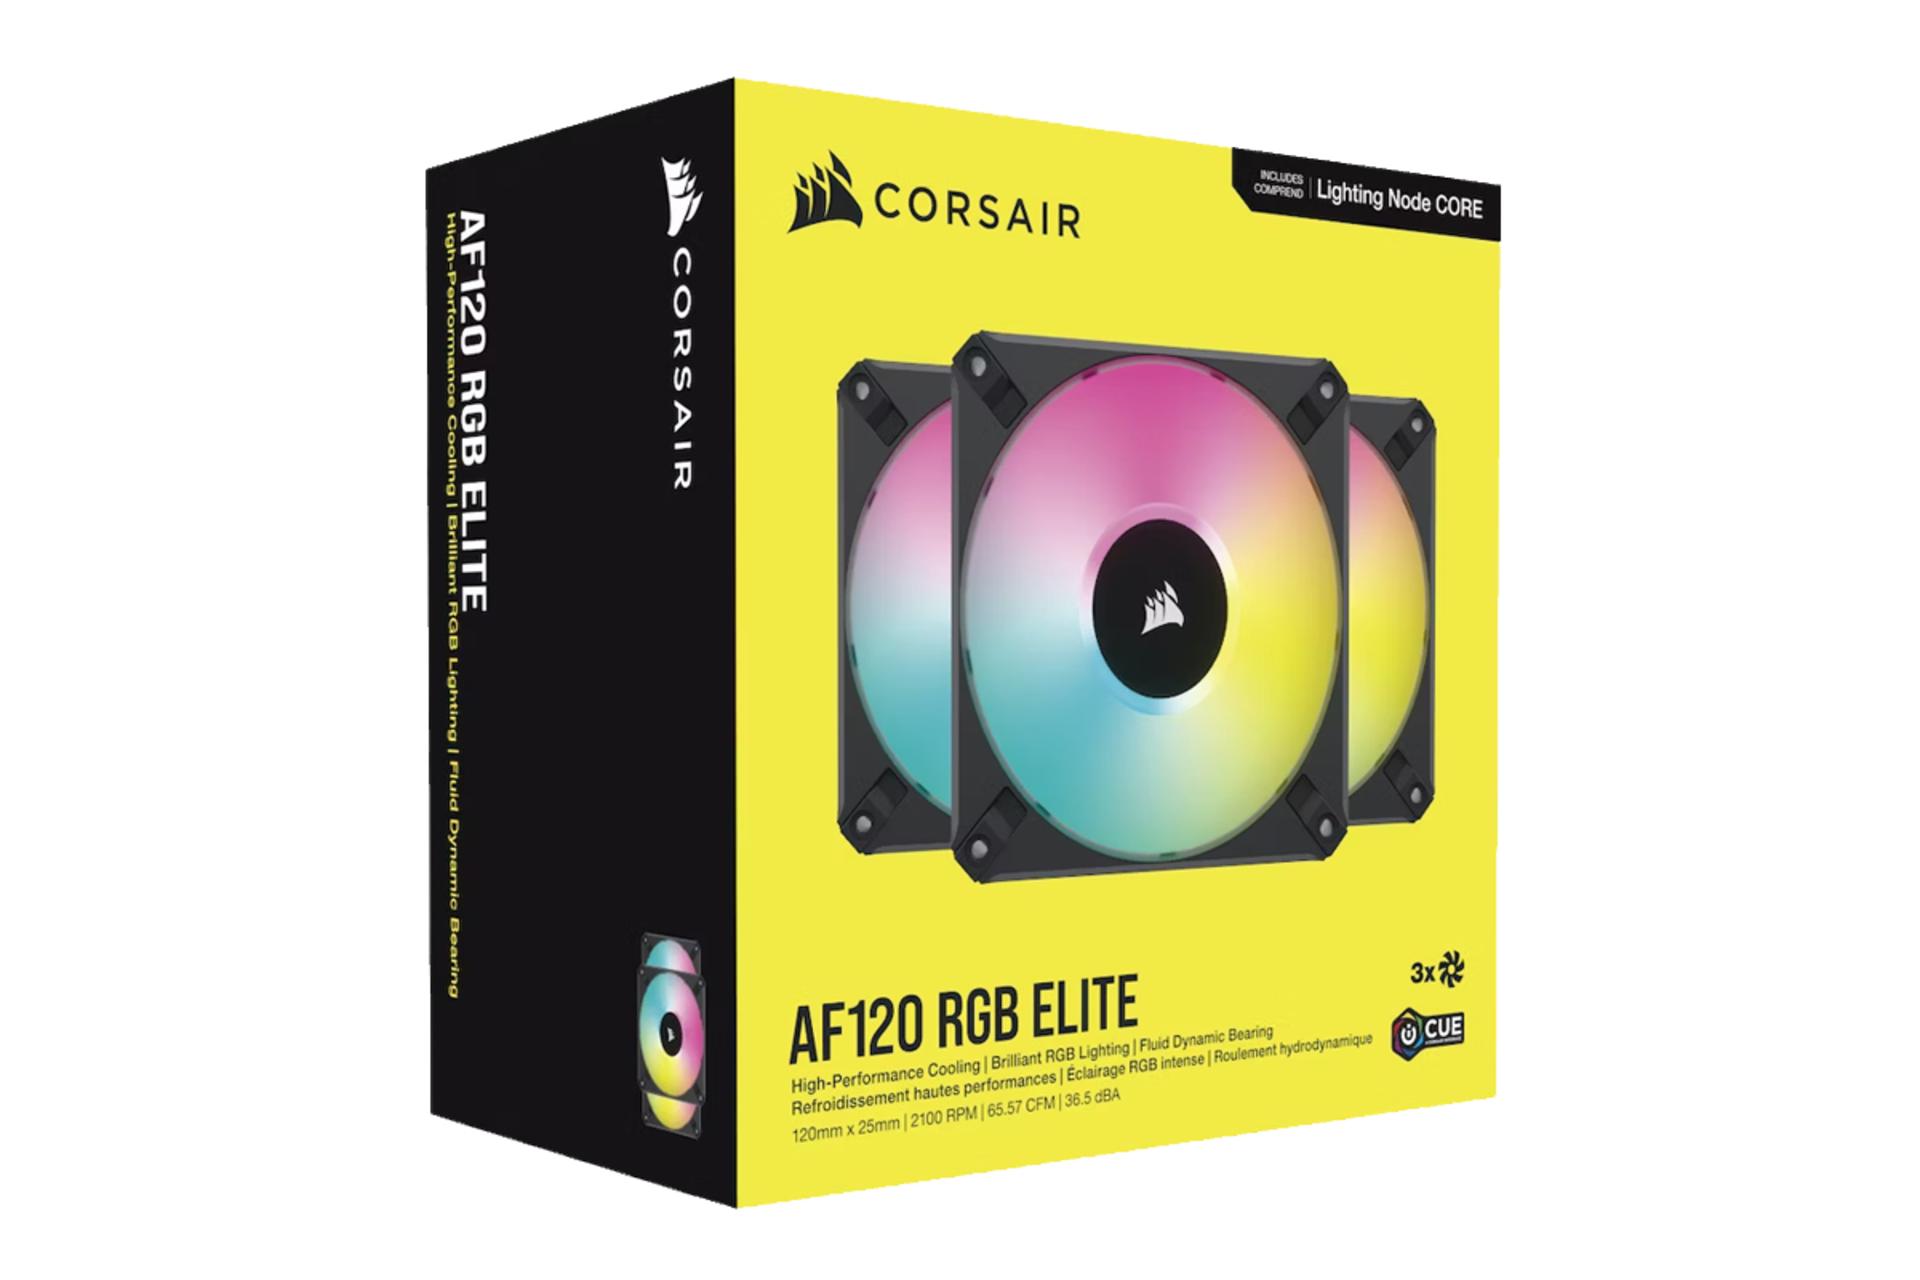 جعبه فن کیس کورسیر iCUE AF120 RGB ELITE Triple Fan Kit